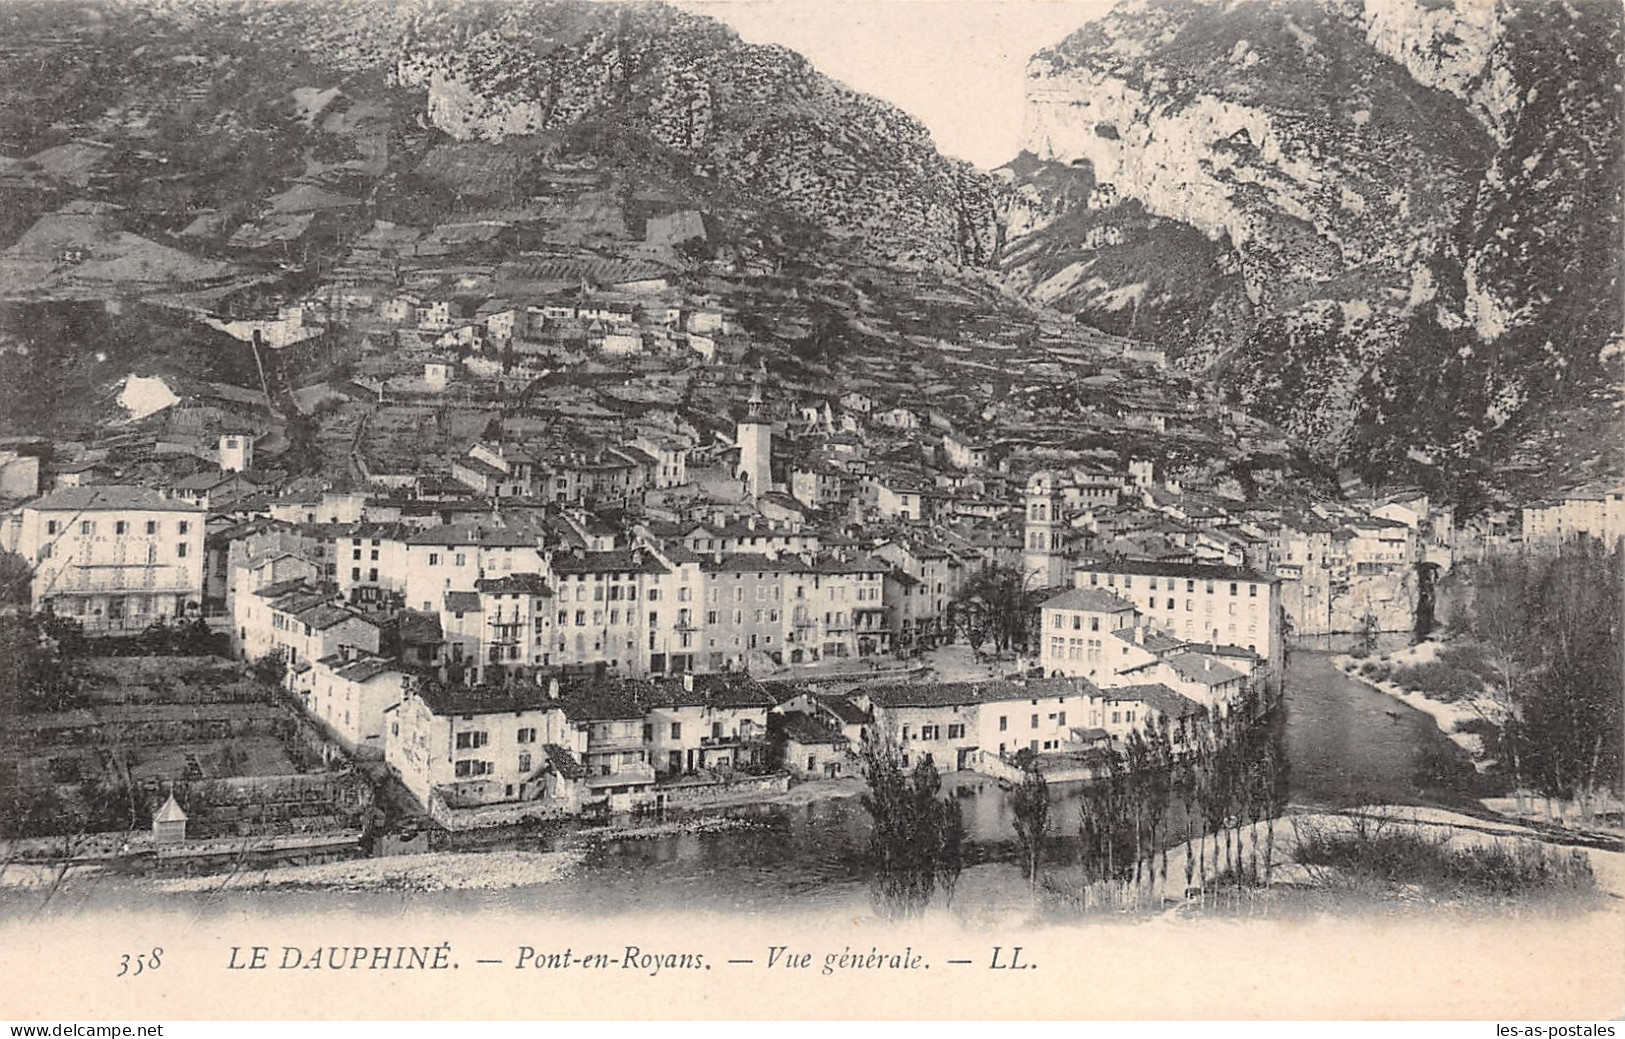 38 PONT EN ROYANS - Pont-en-Royans